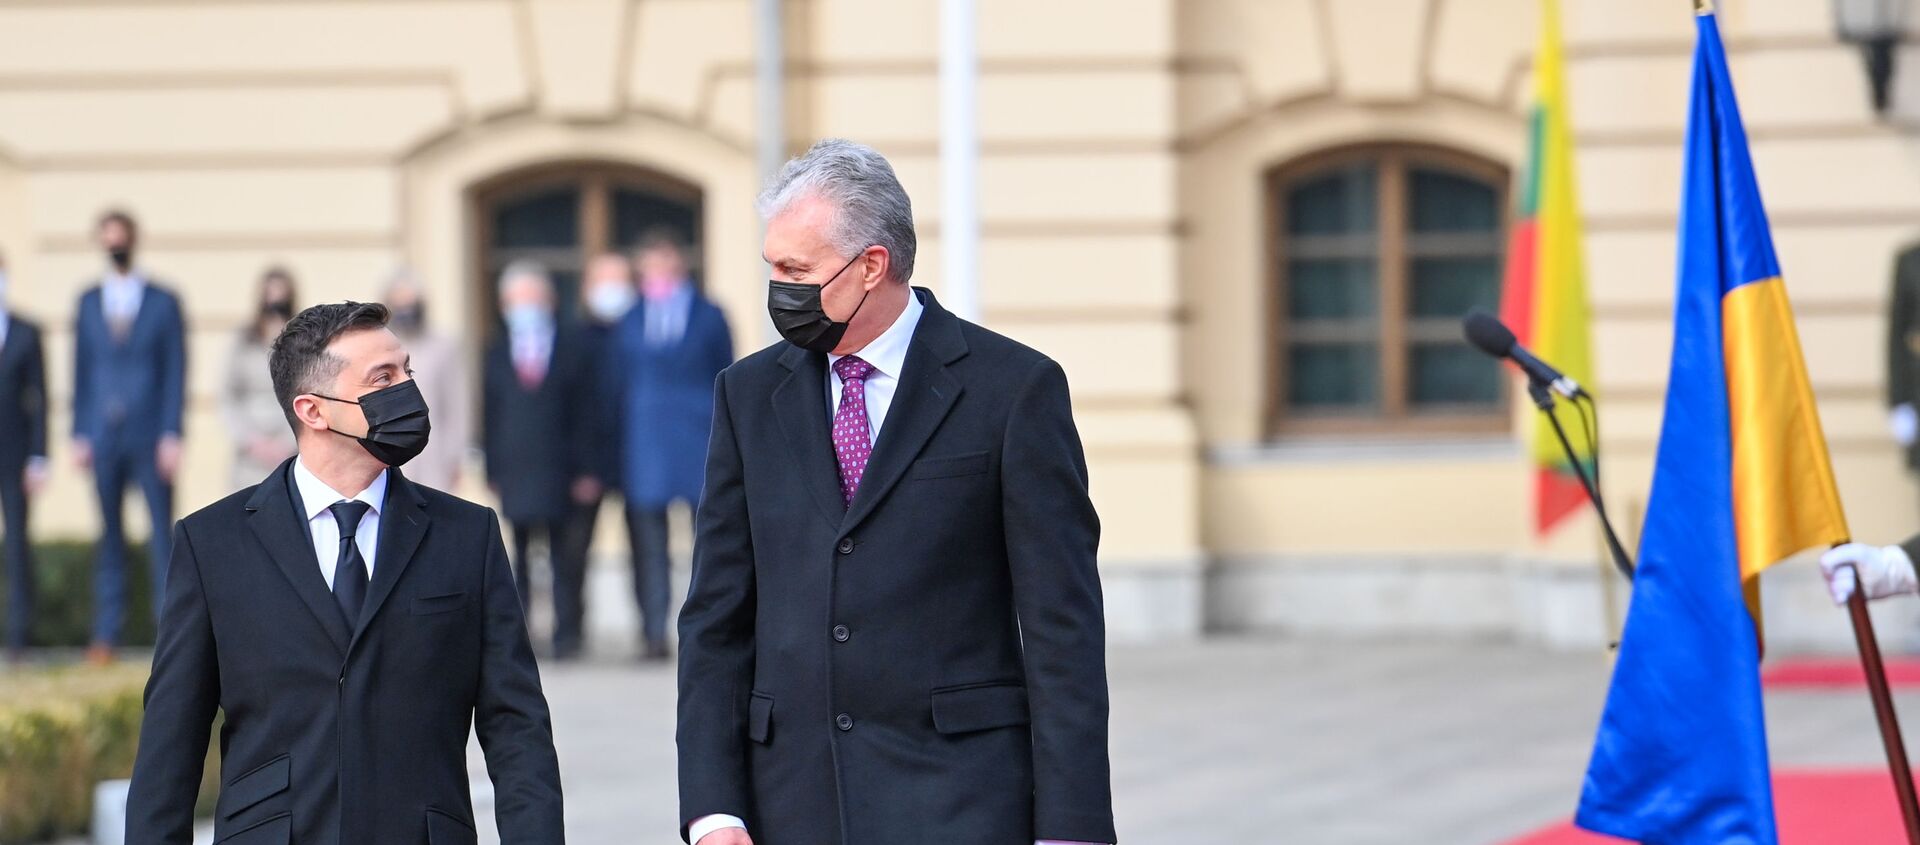 Президент Литвы Гитанас Науседа встретился с лидером Украины Владимиром Зеленским, 18 марта 2021 года - Sputnik Литва, 1920, 18.03.2021